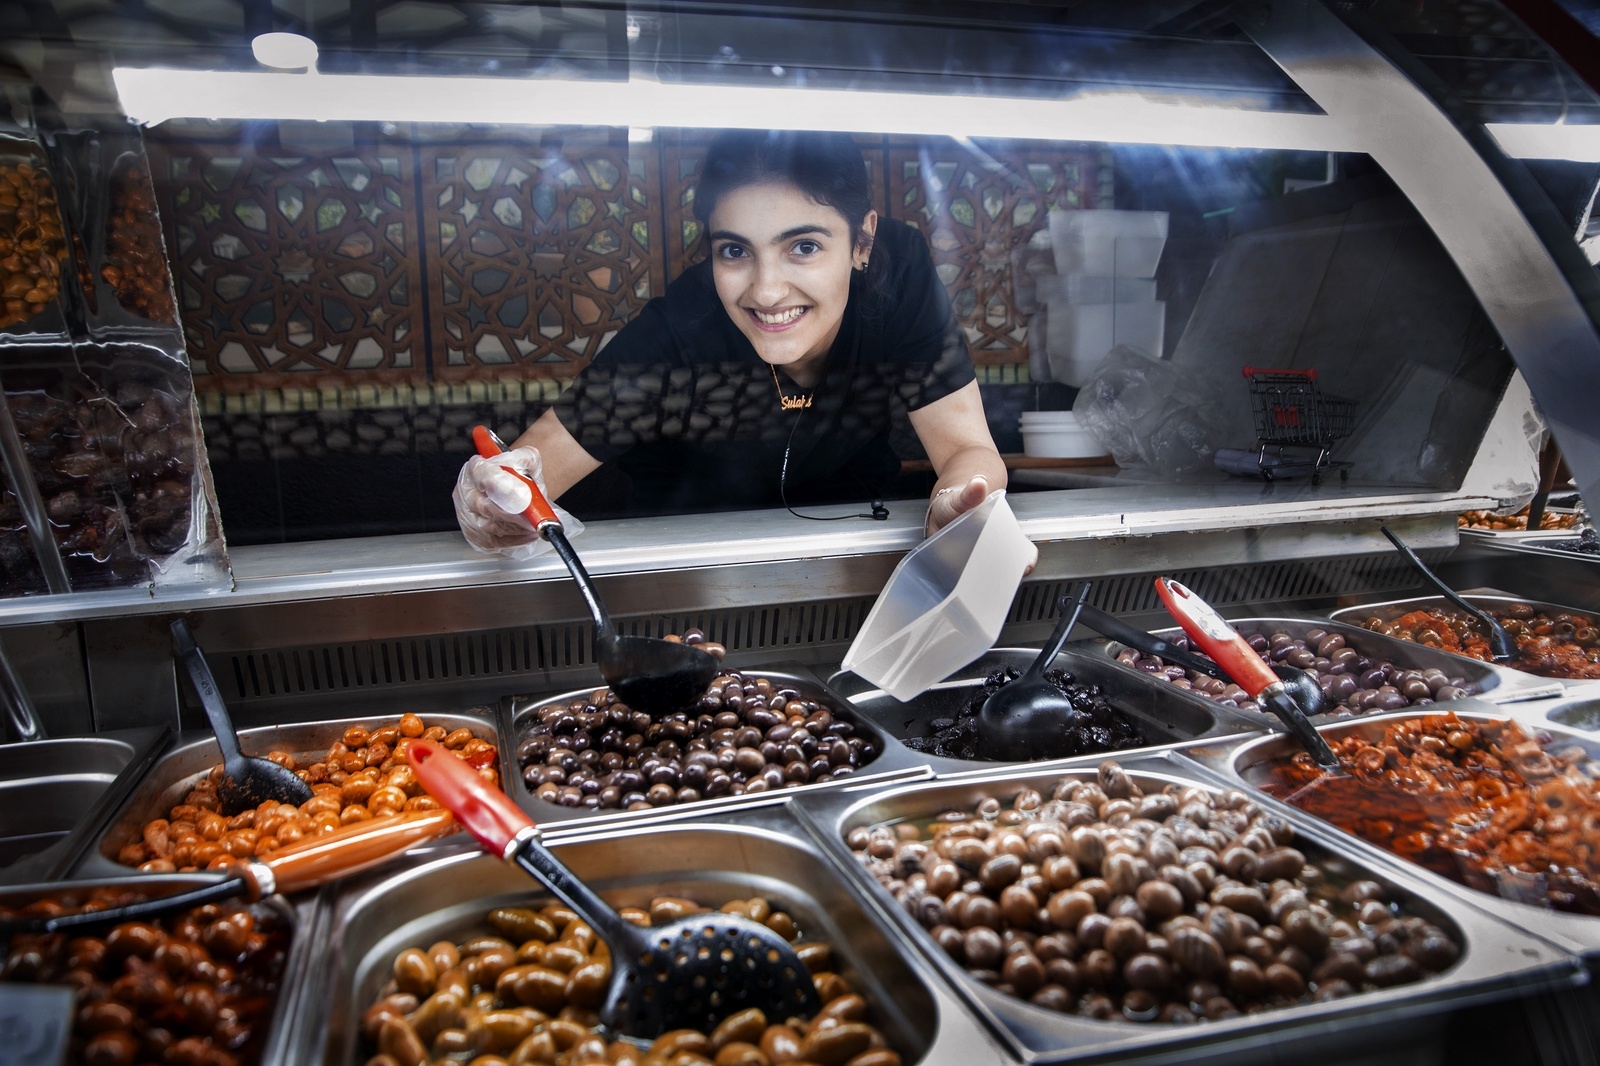 Längs med Norrbyleden hittar vi Sulafa Shehada. Tillsammans med sin familj som kom till Sverige från Syrien för fem år sedan, driver hon Norrbys delikatessbutik Saleh Ost.